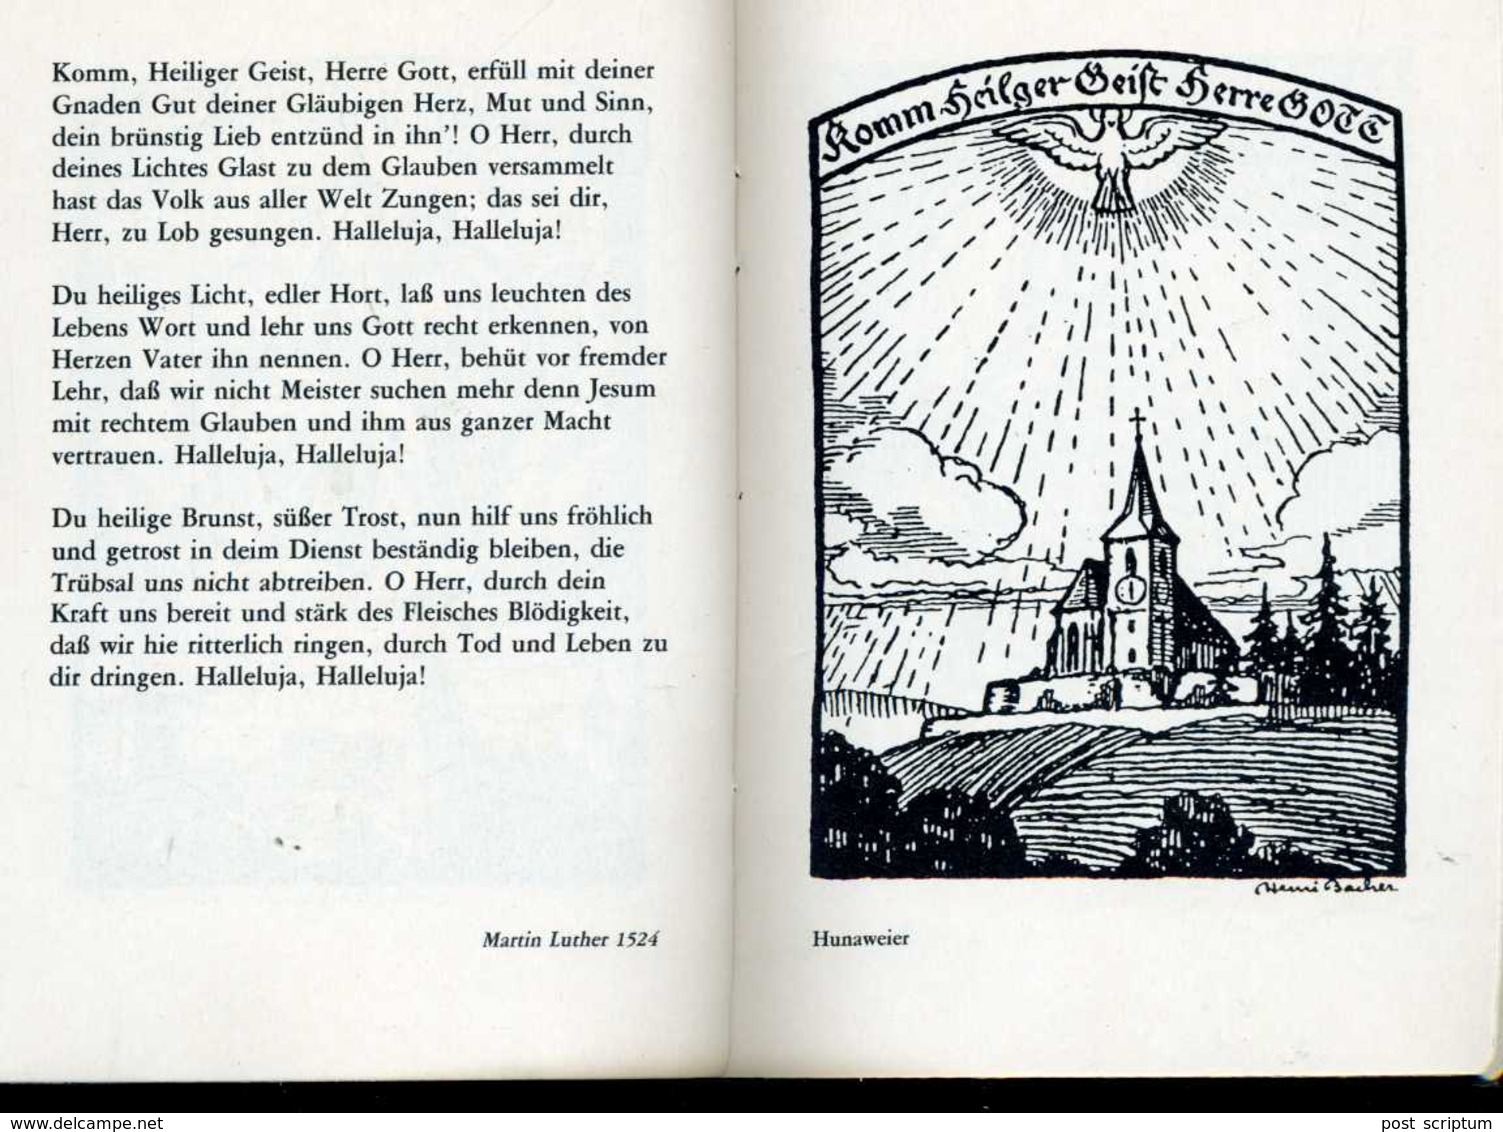 Livre - B H Bonshoff Elsass Lothringer Stundenbuch Die Religiosen Darstellung Henri Bacher s (illustrations)